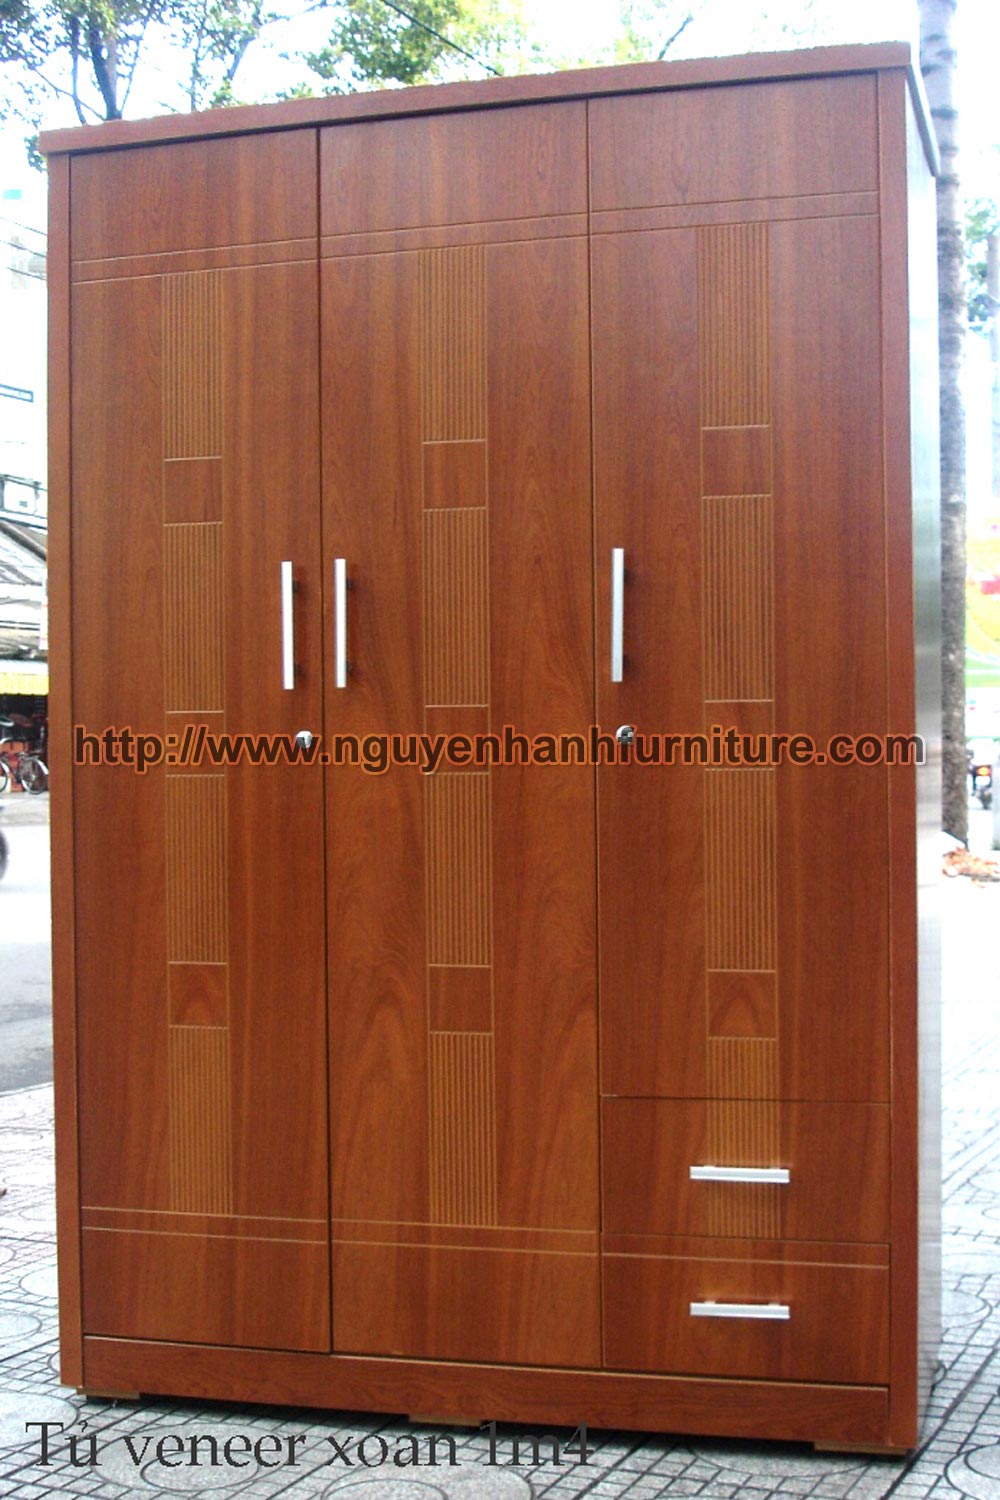 Name product: 1m4 Wardrobe of veneer Bead tree wood - Dimensions: 58 x 140 x 210cm - Description: Veneer bead tree wood